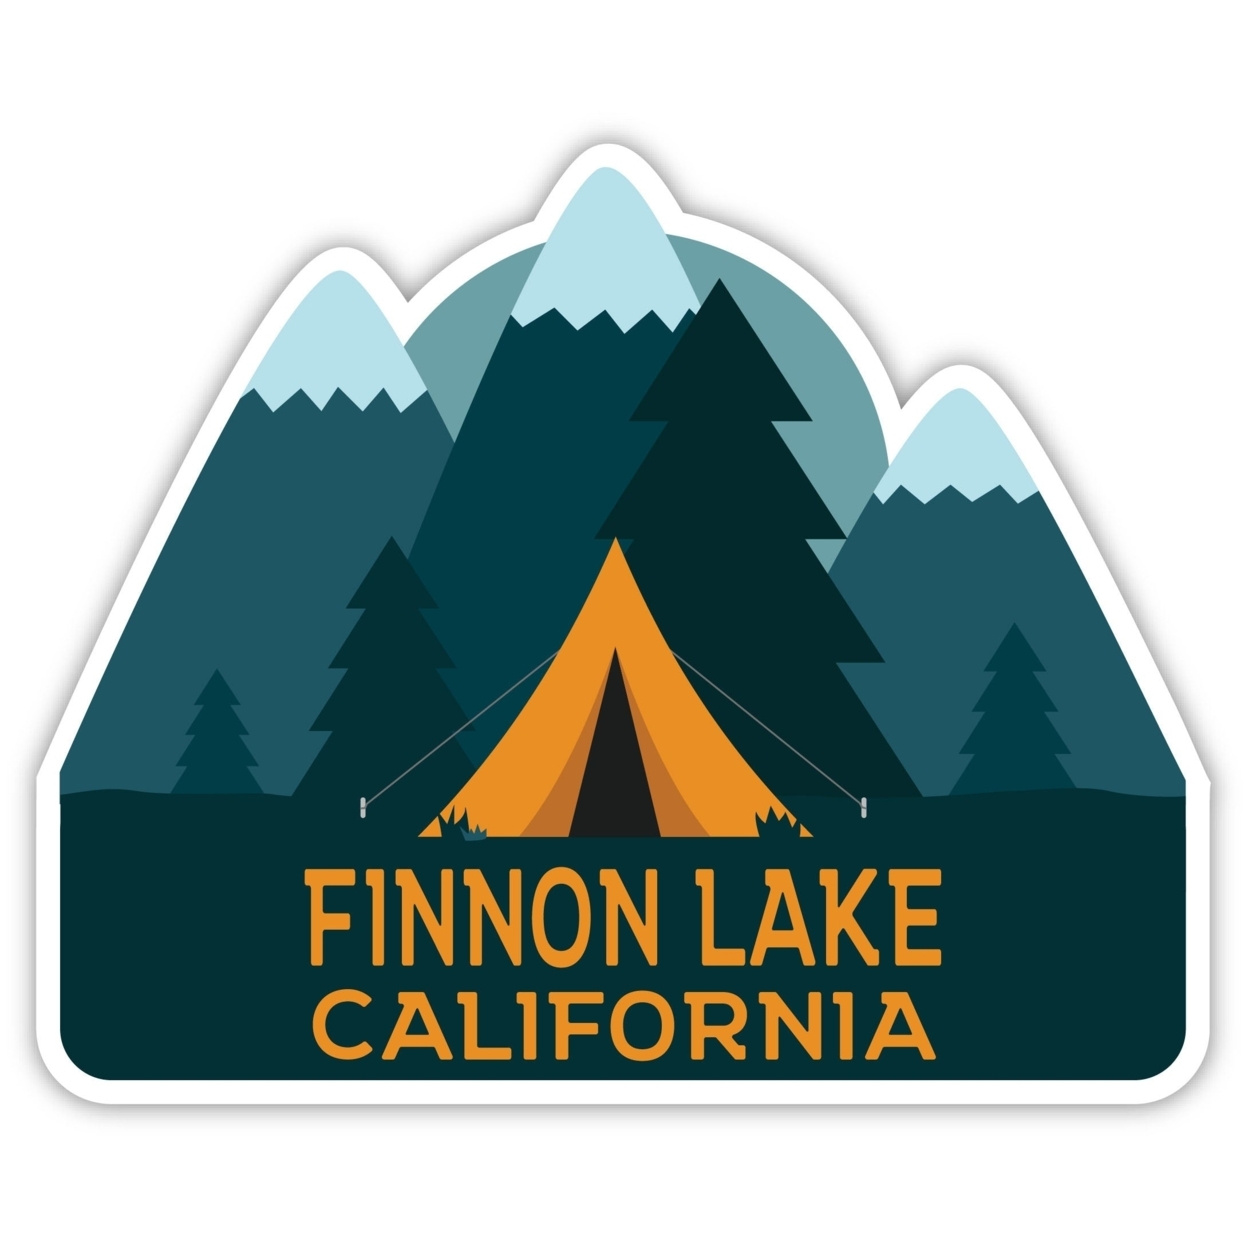 Finnon Lake California Souvenir Decorative Stickers (Choose Theme And Size) - Single Unit, 6-Inch, Tent